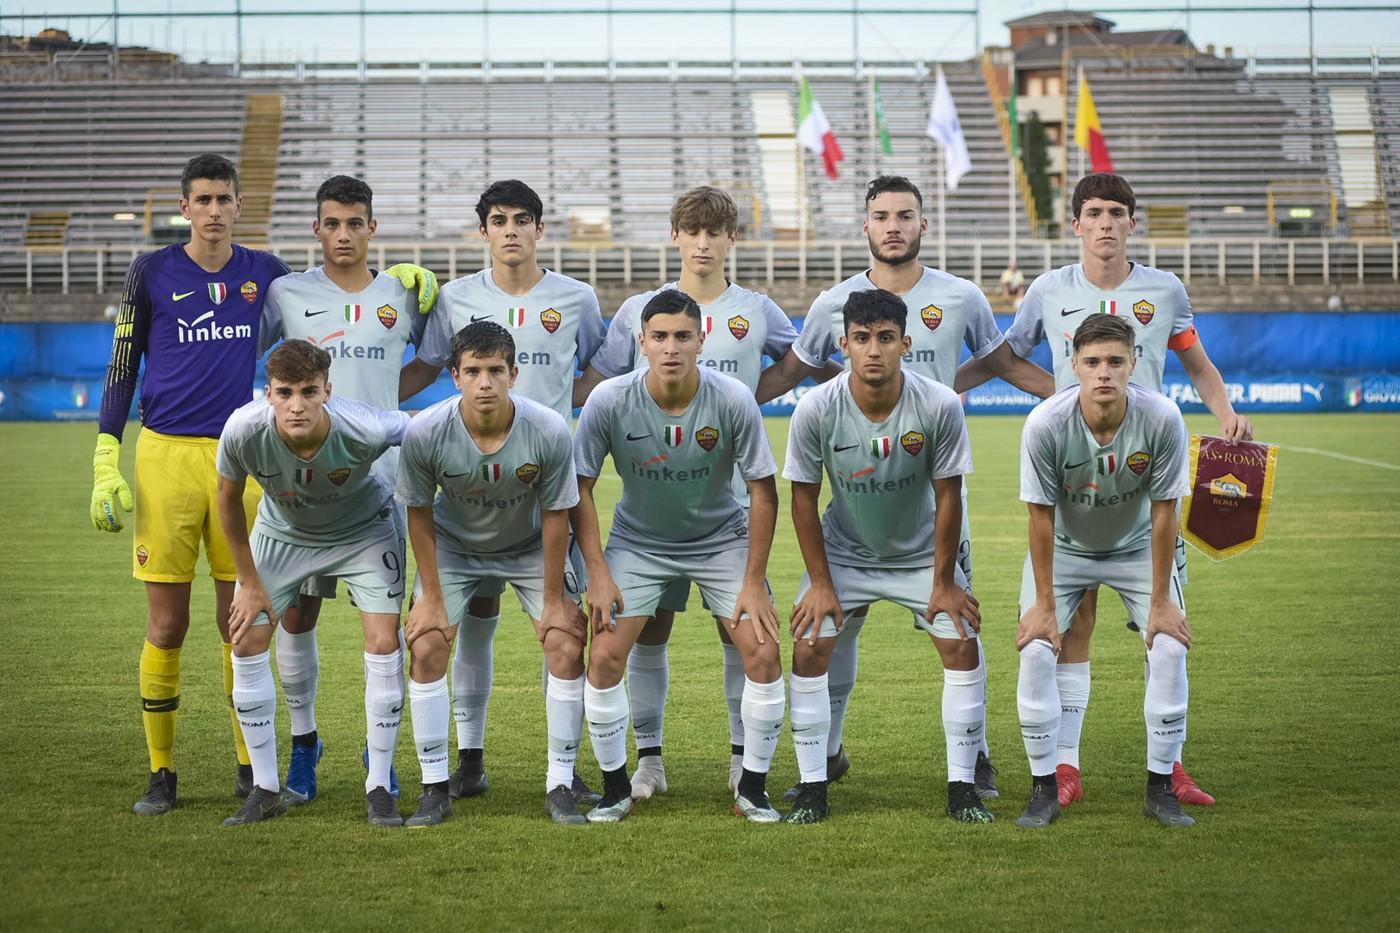 La formazione della Roma Under 17 prima della partita contro l'Inter: molti di quei ragazzi faranno l’Under 18, se dovesse partire il campionato ©LaPresse